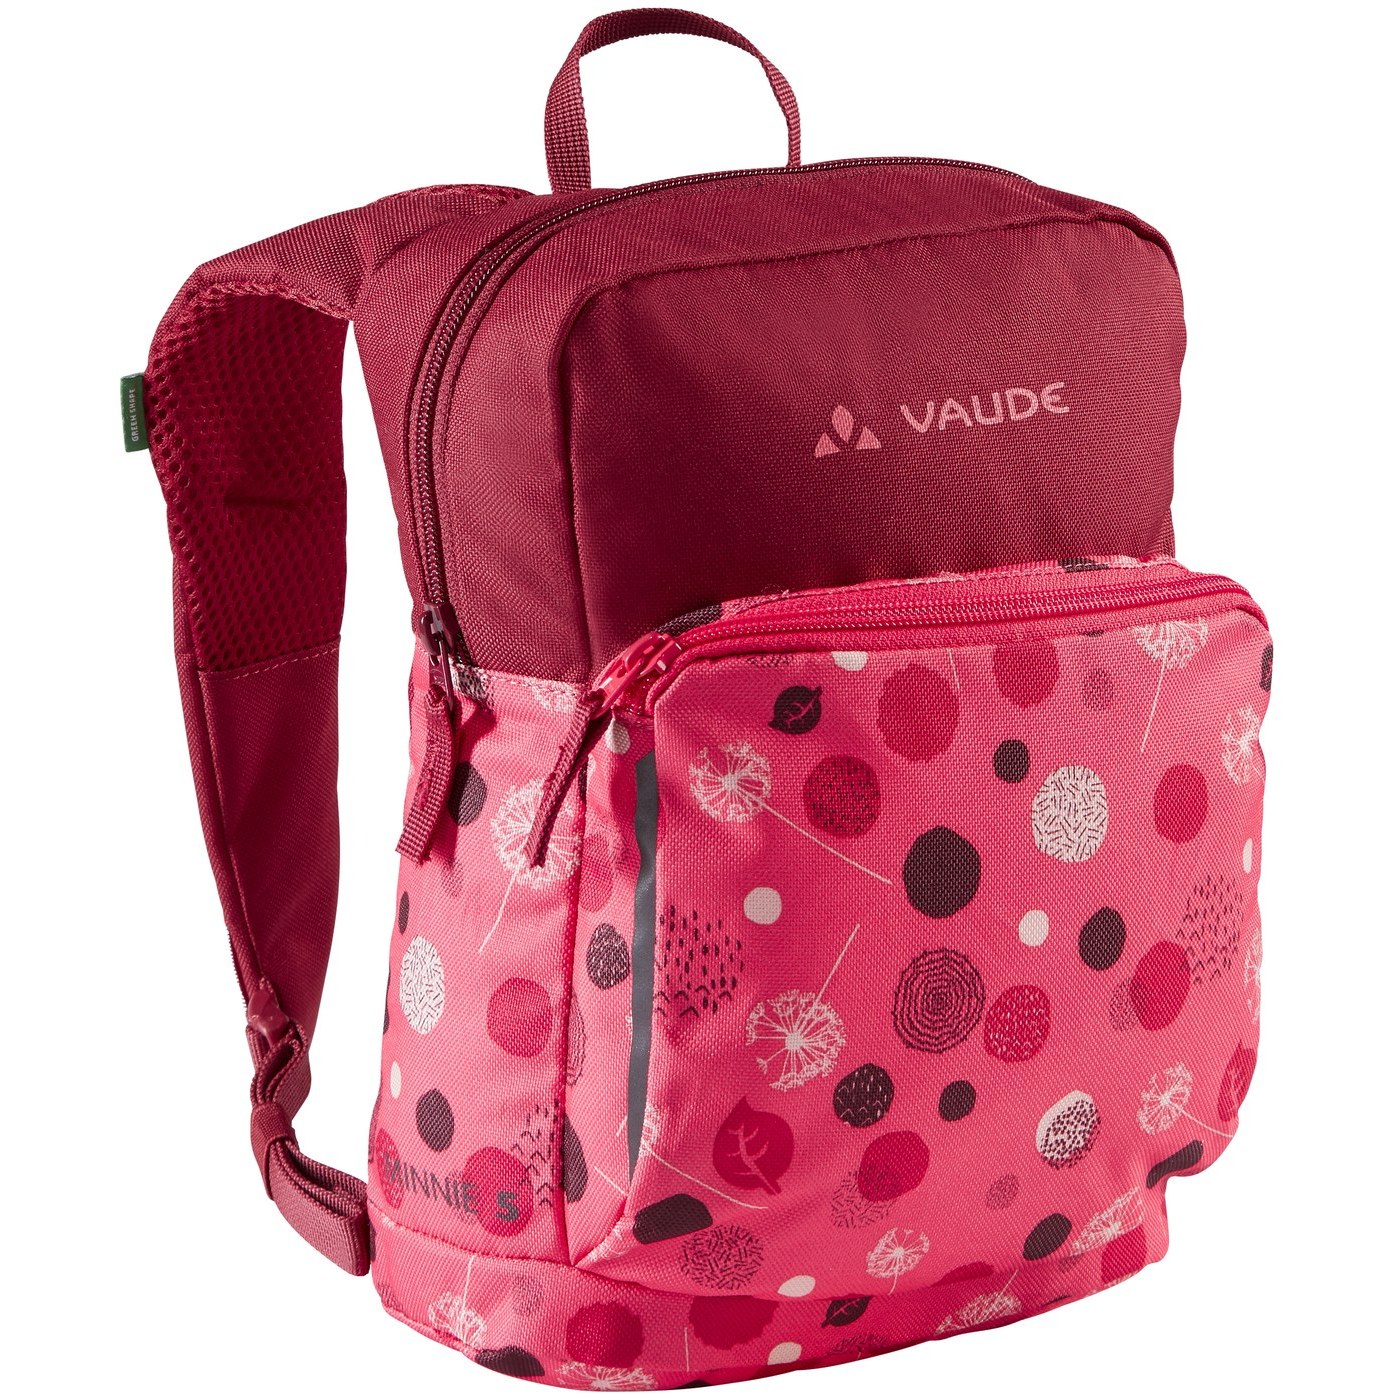 Produktbild von Vaude Minnie 5L Rucksack Kinder - bright pink/cranberry